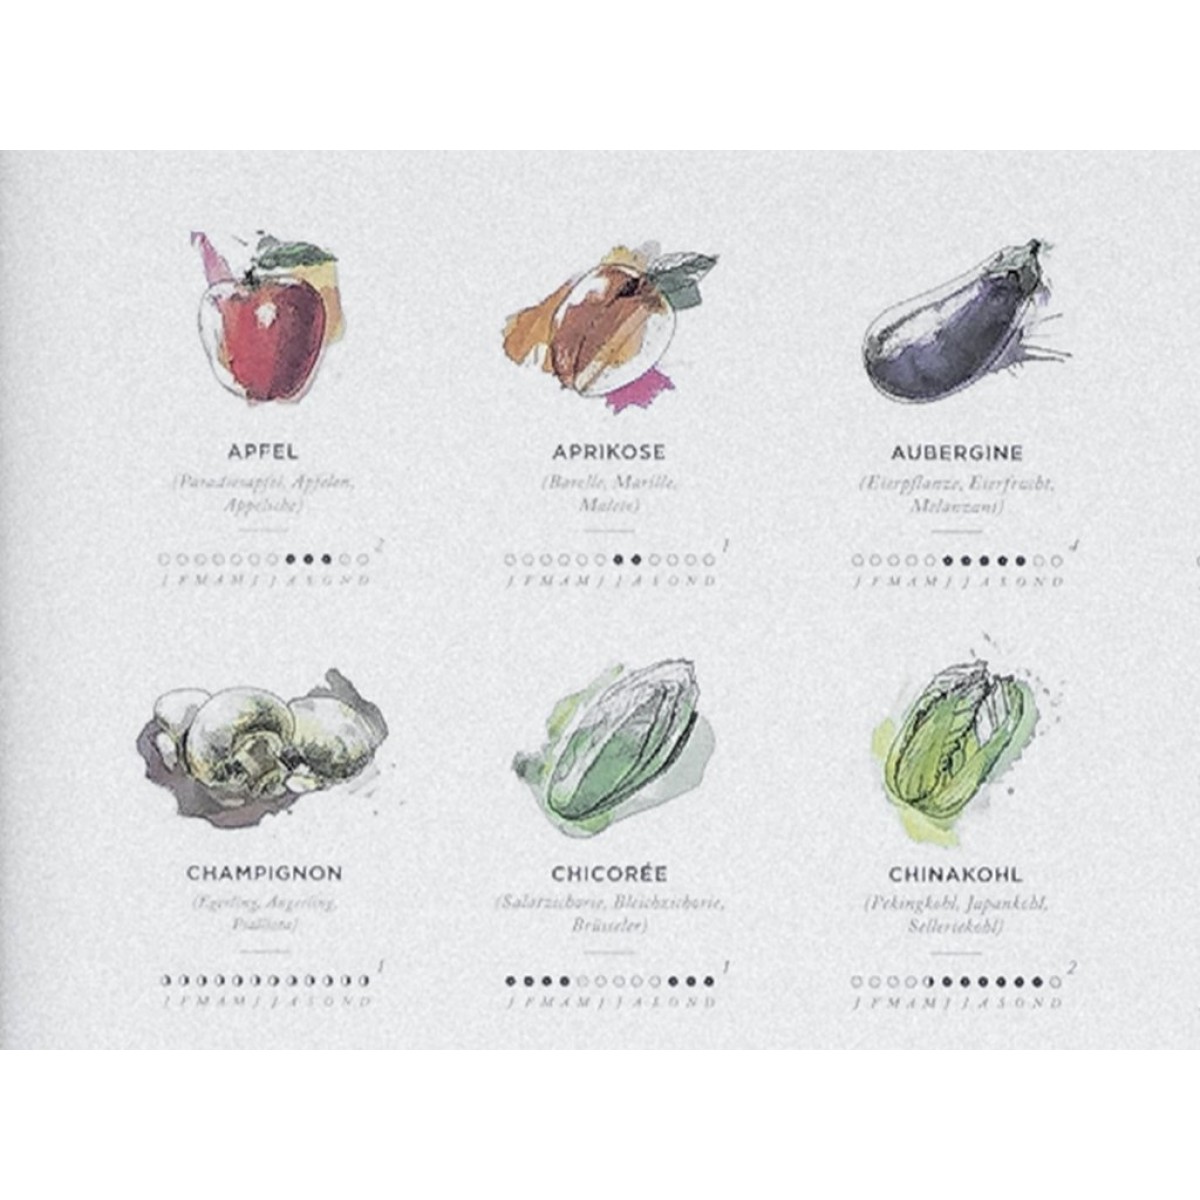 Saisonkalender Obst & Gemüse, Poster/Plakat in Farbe von Kupferstecher.Art